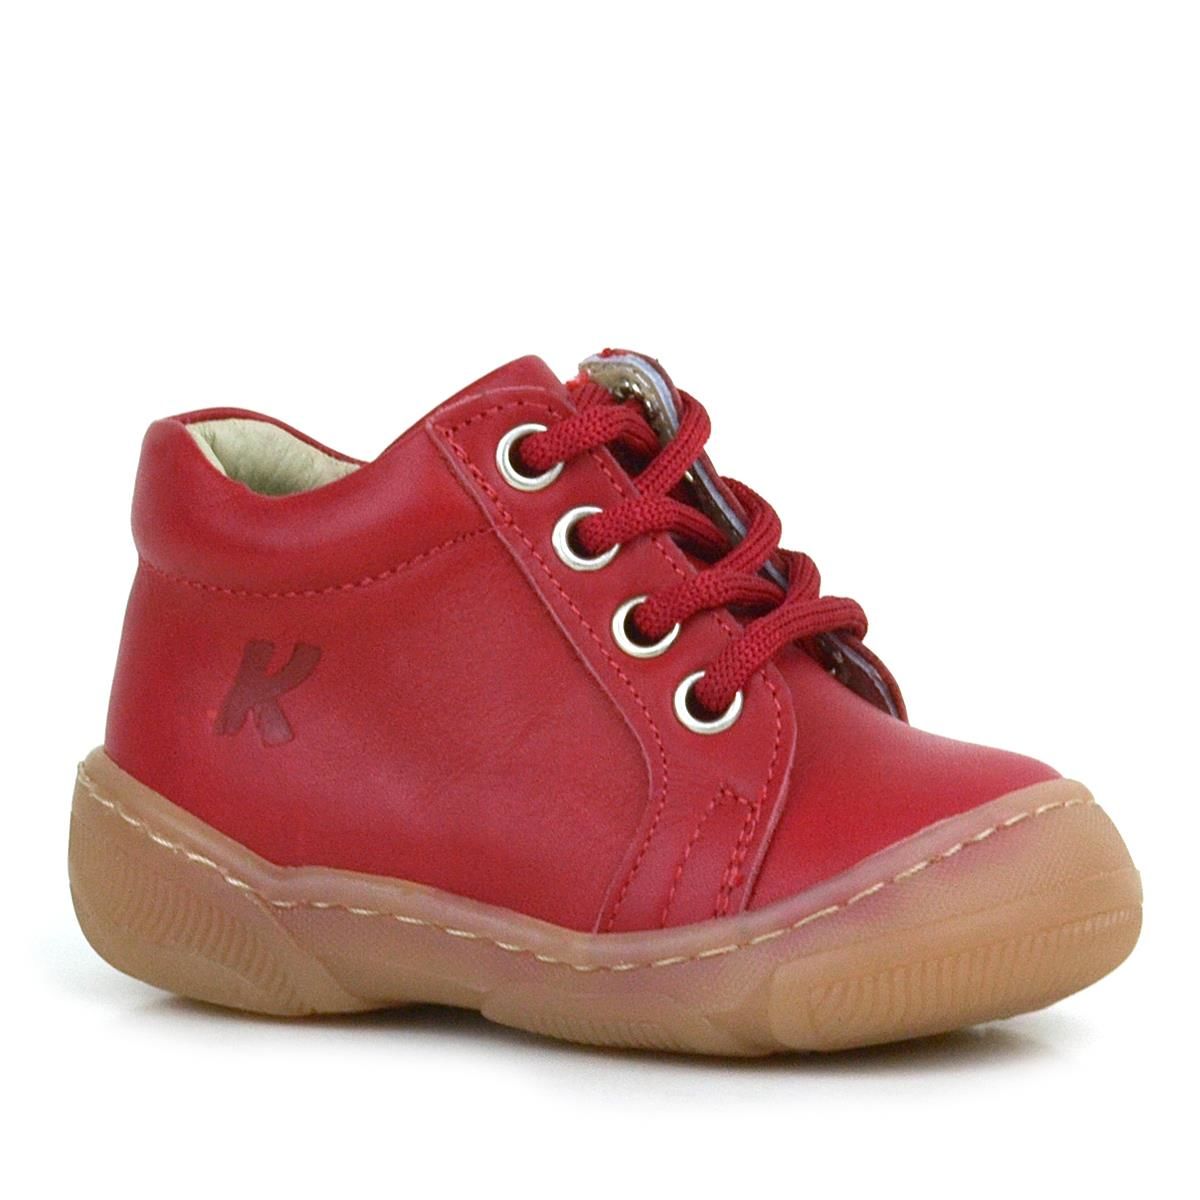 Anatomik Yumuşak Hakiki Deri Fermuarlı Kırmızı Bebek Bot Ayakkabı